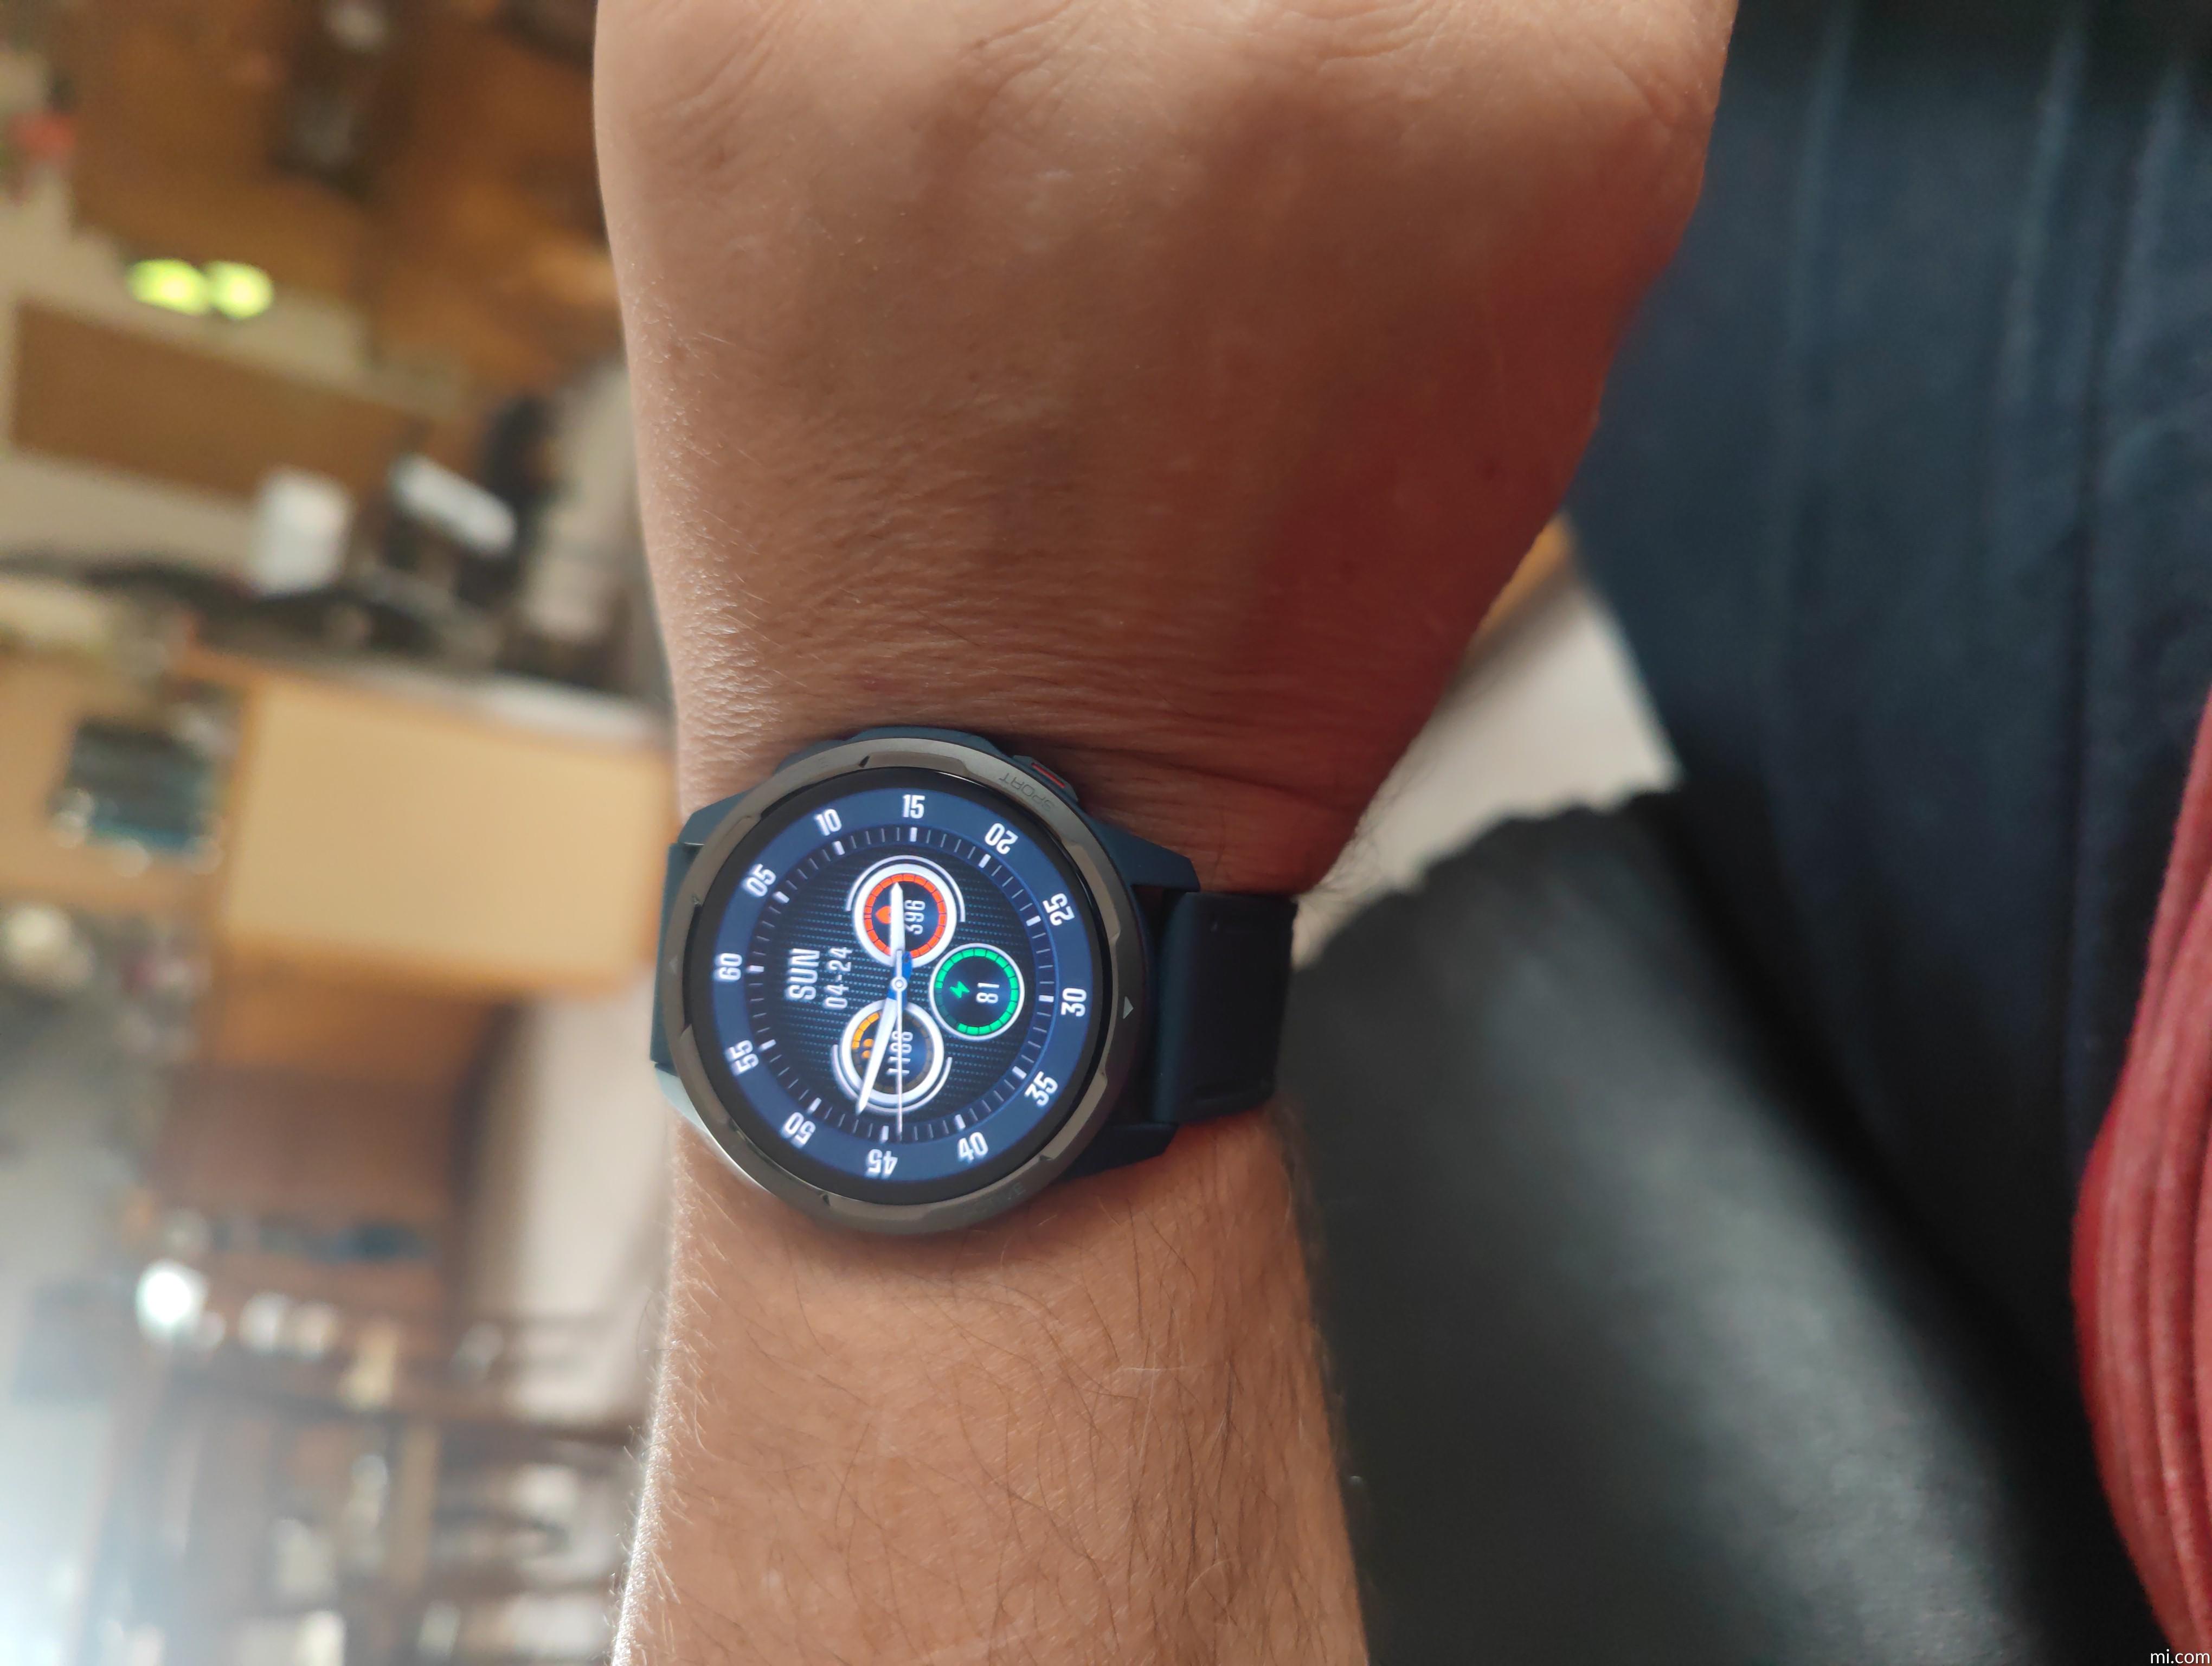 Montre intelligente Xiaomi Watch S1 Argent